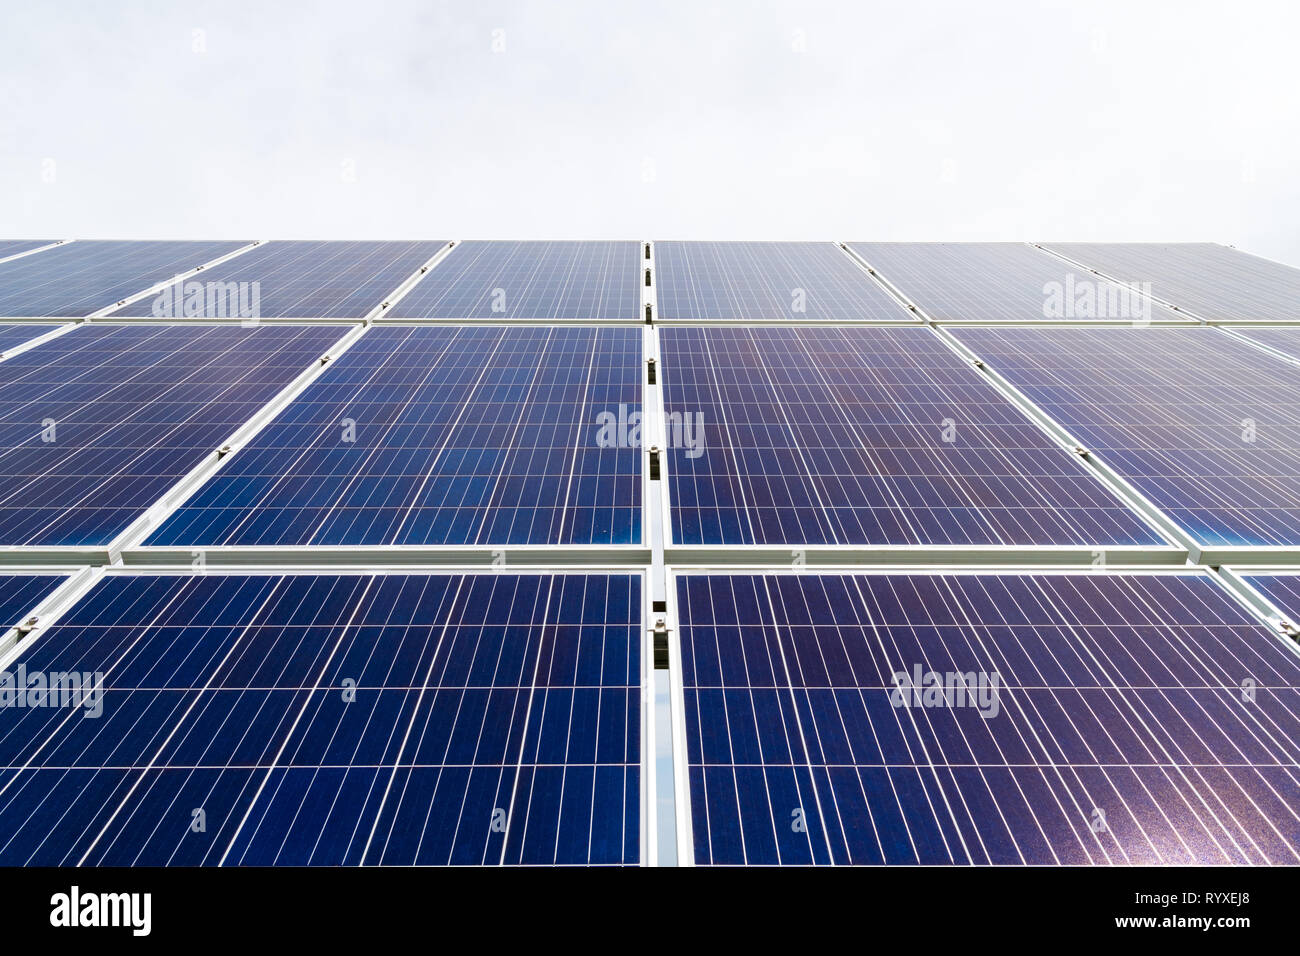 Cellule solaire panneaux photovoltaïques à l'usine de production d'énergie avec bleu ciel nuageux dans l'arrière-plan. Concept d'énergie renouvelable solaire Banque D'Images